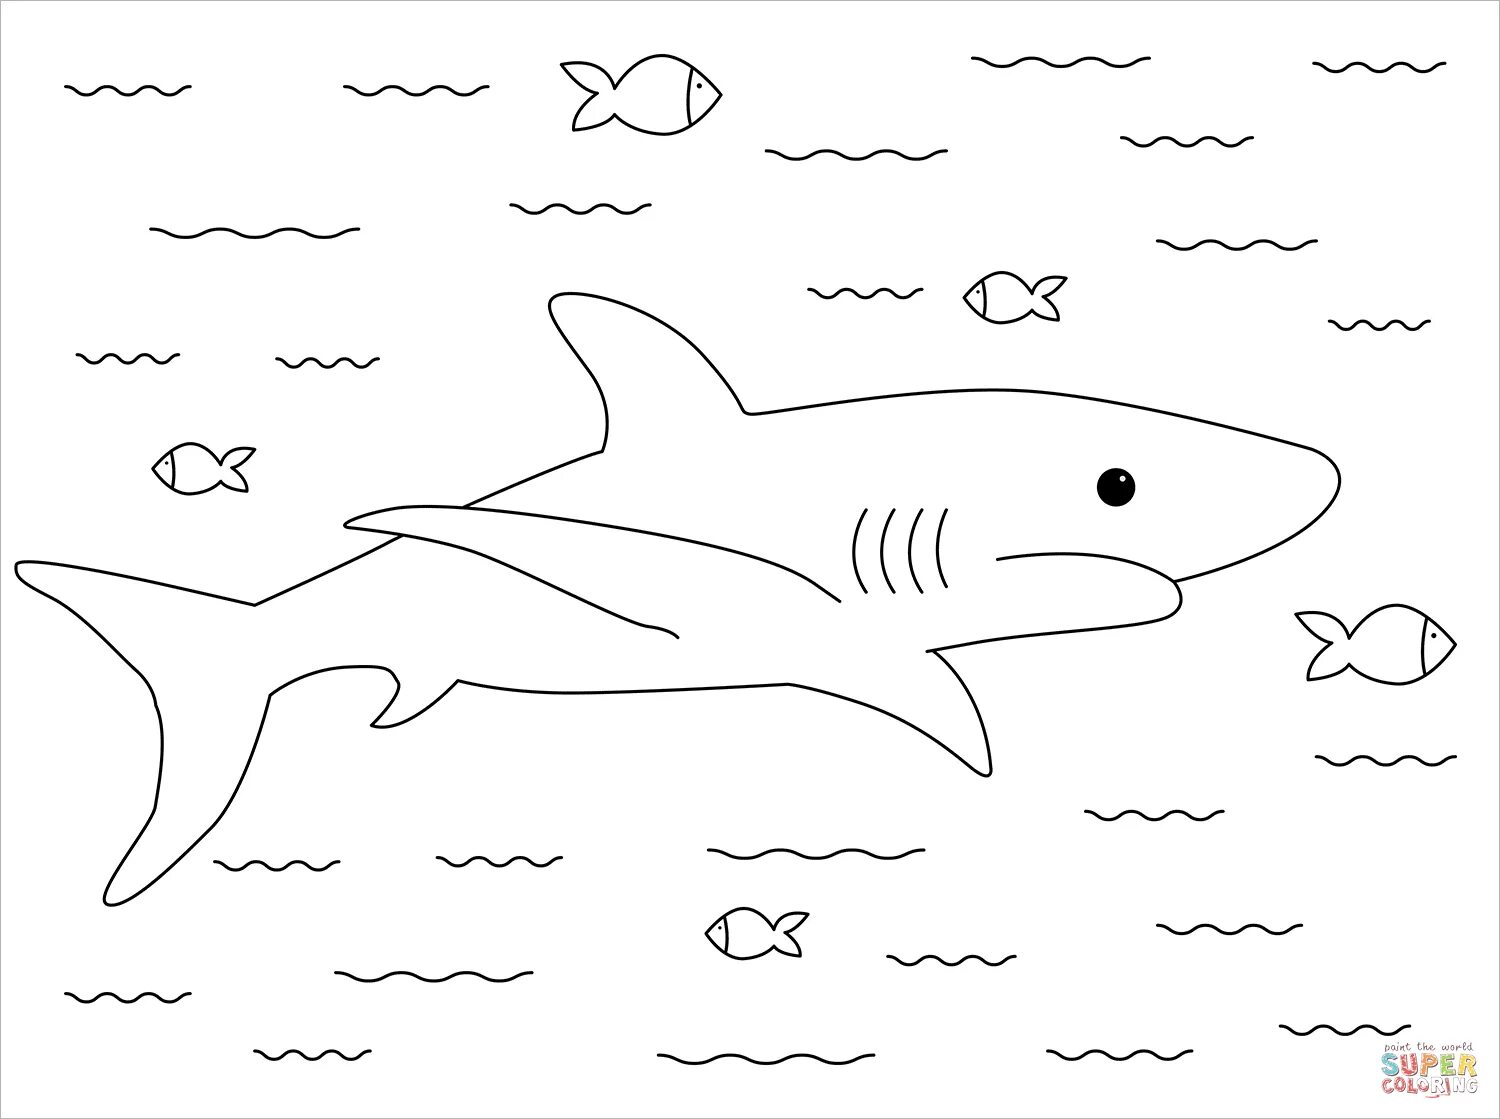 Cute fat shark coloring book